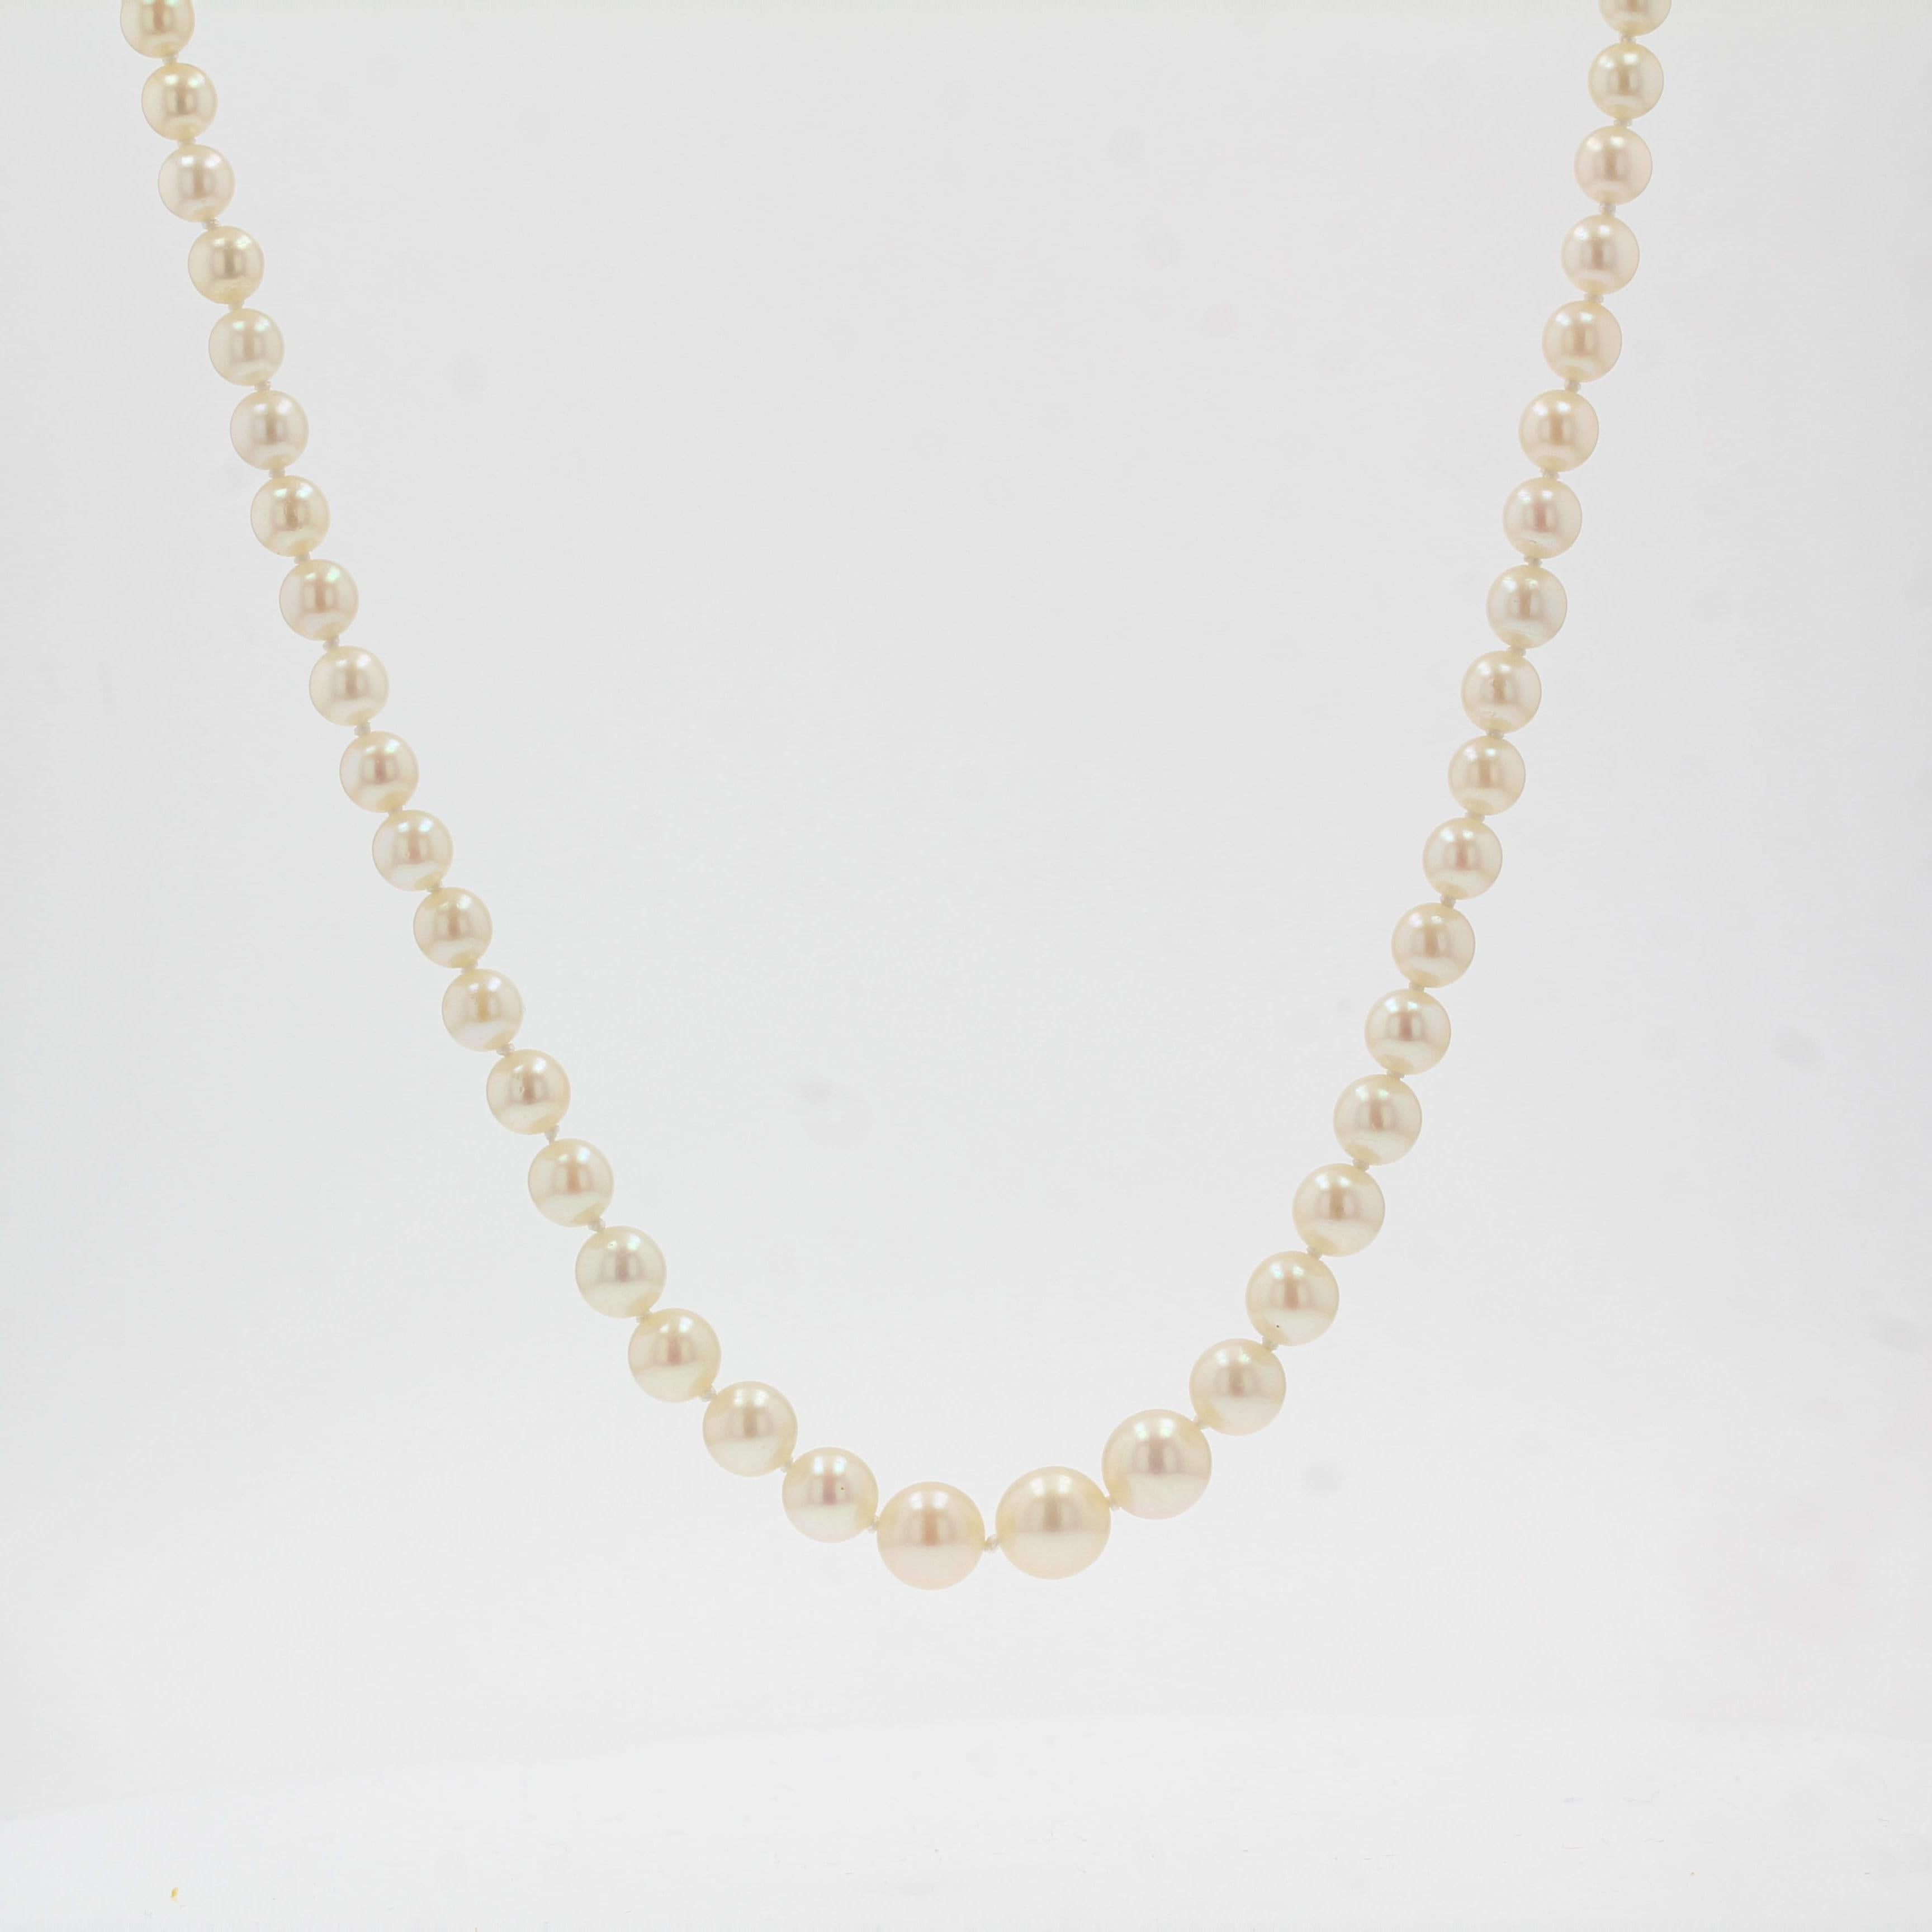 Dieses Perlencollier besteht aus einem Strang japanischer Zuchtperlen, die durch einen Verschluss aus 18 Karat Gelbgold zusammengehalten werden. 
Durchmesser der Perlen: 4/4,5 bis 8 / 8,5 mm.
Gesamtlänge: 54,5 cm.
Gesamtgewicht: ca. 22,1 g.
Die